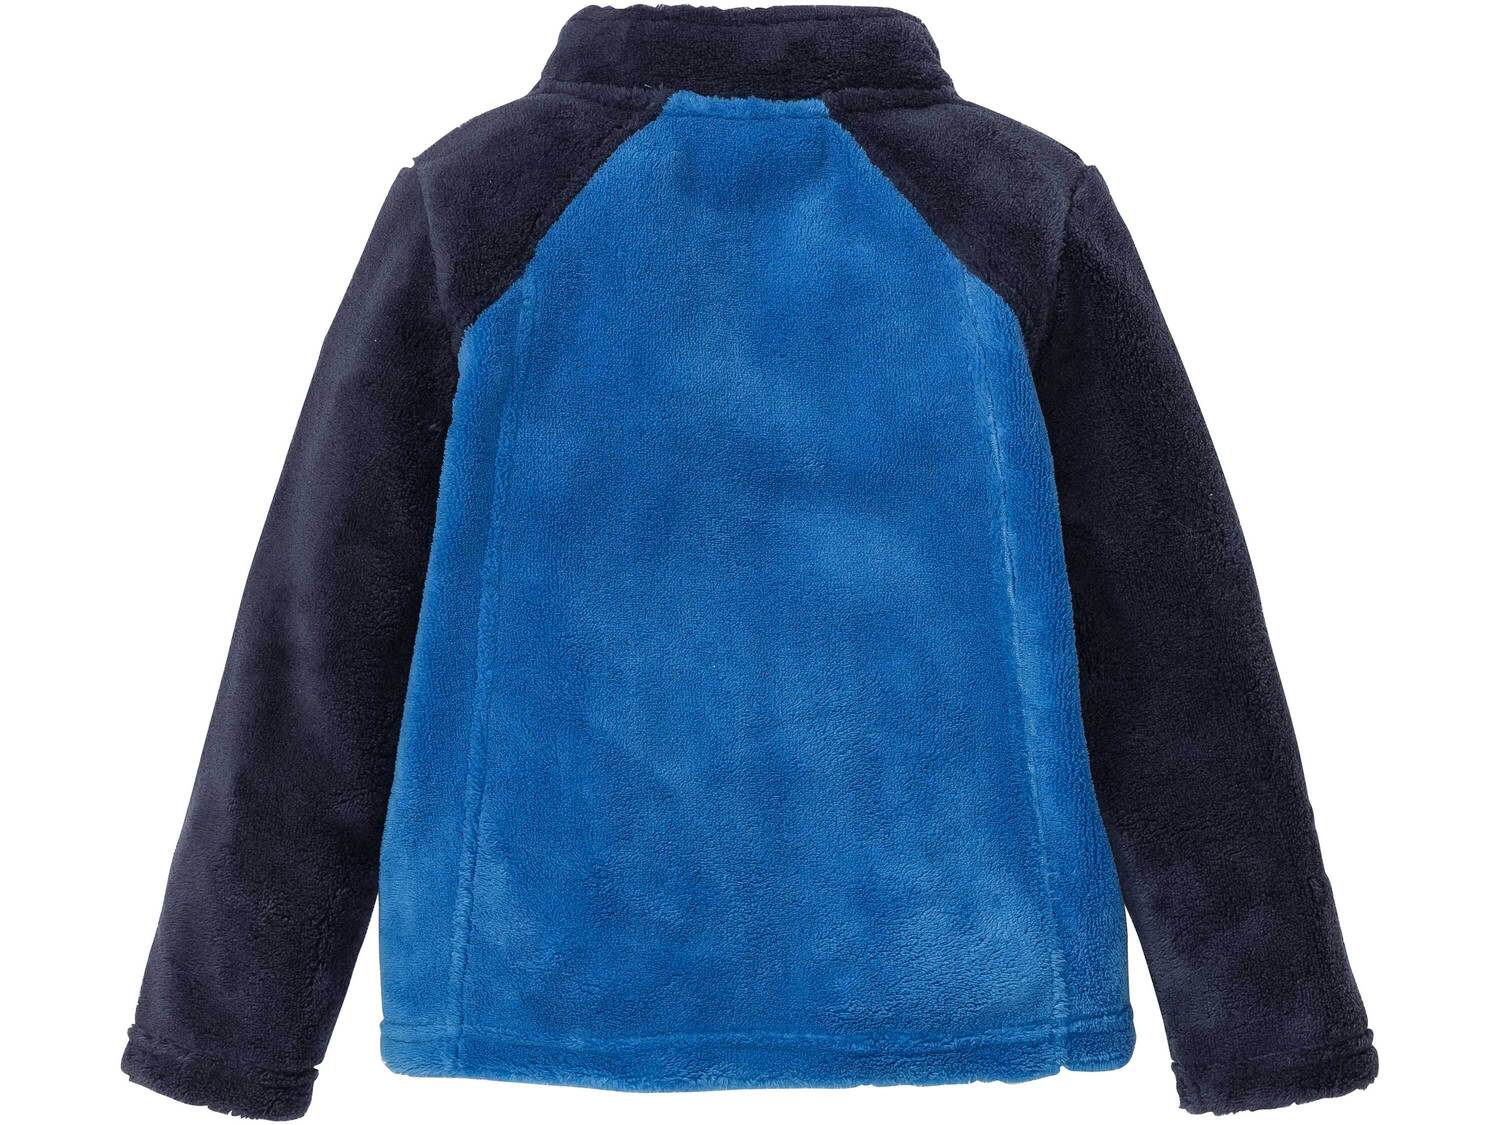 Polarowa bluza dziecięca Crivit Pro, cena 22,99 PLN 
- rozmiary: 86-116
- miękka ...